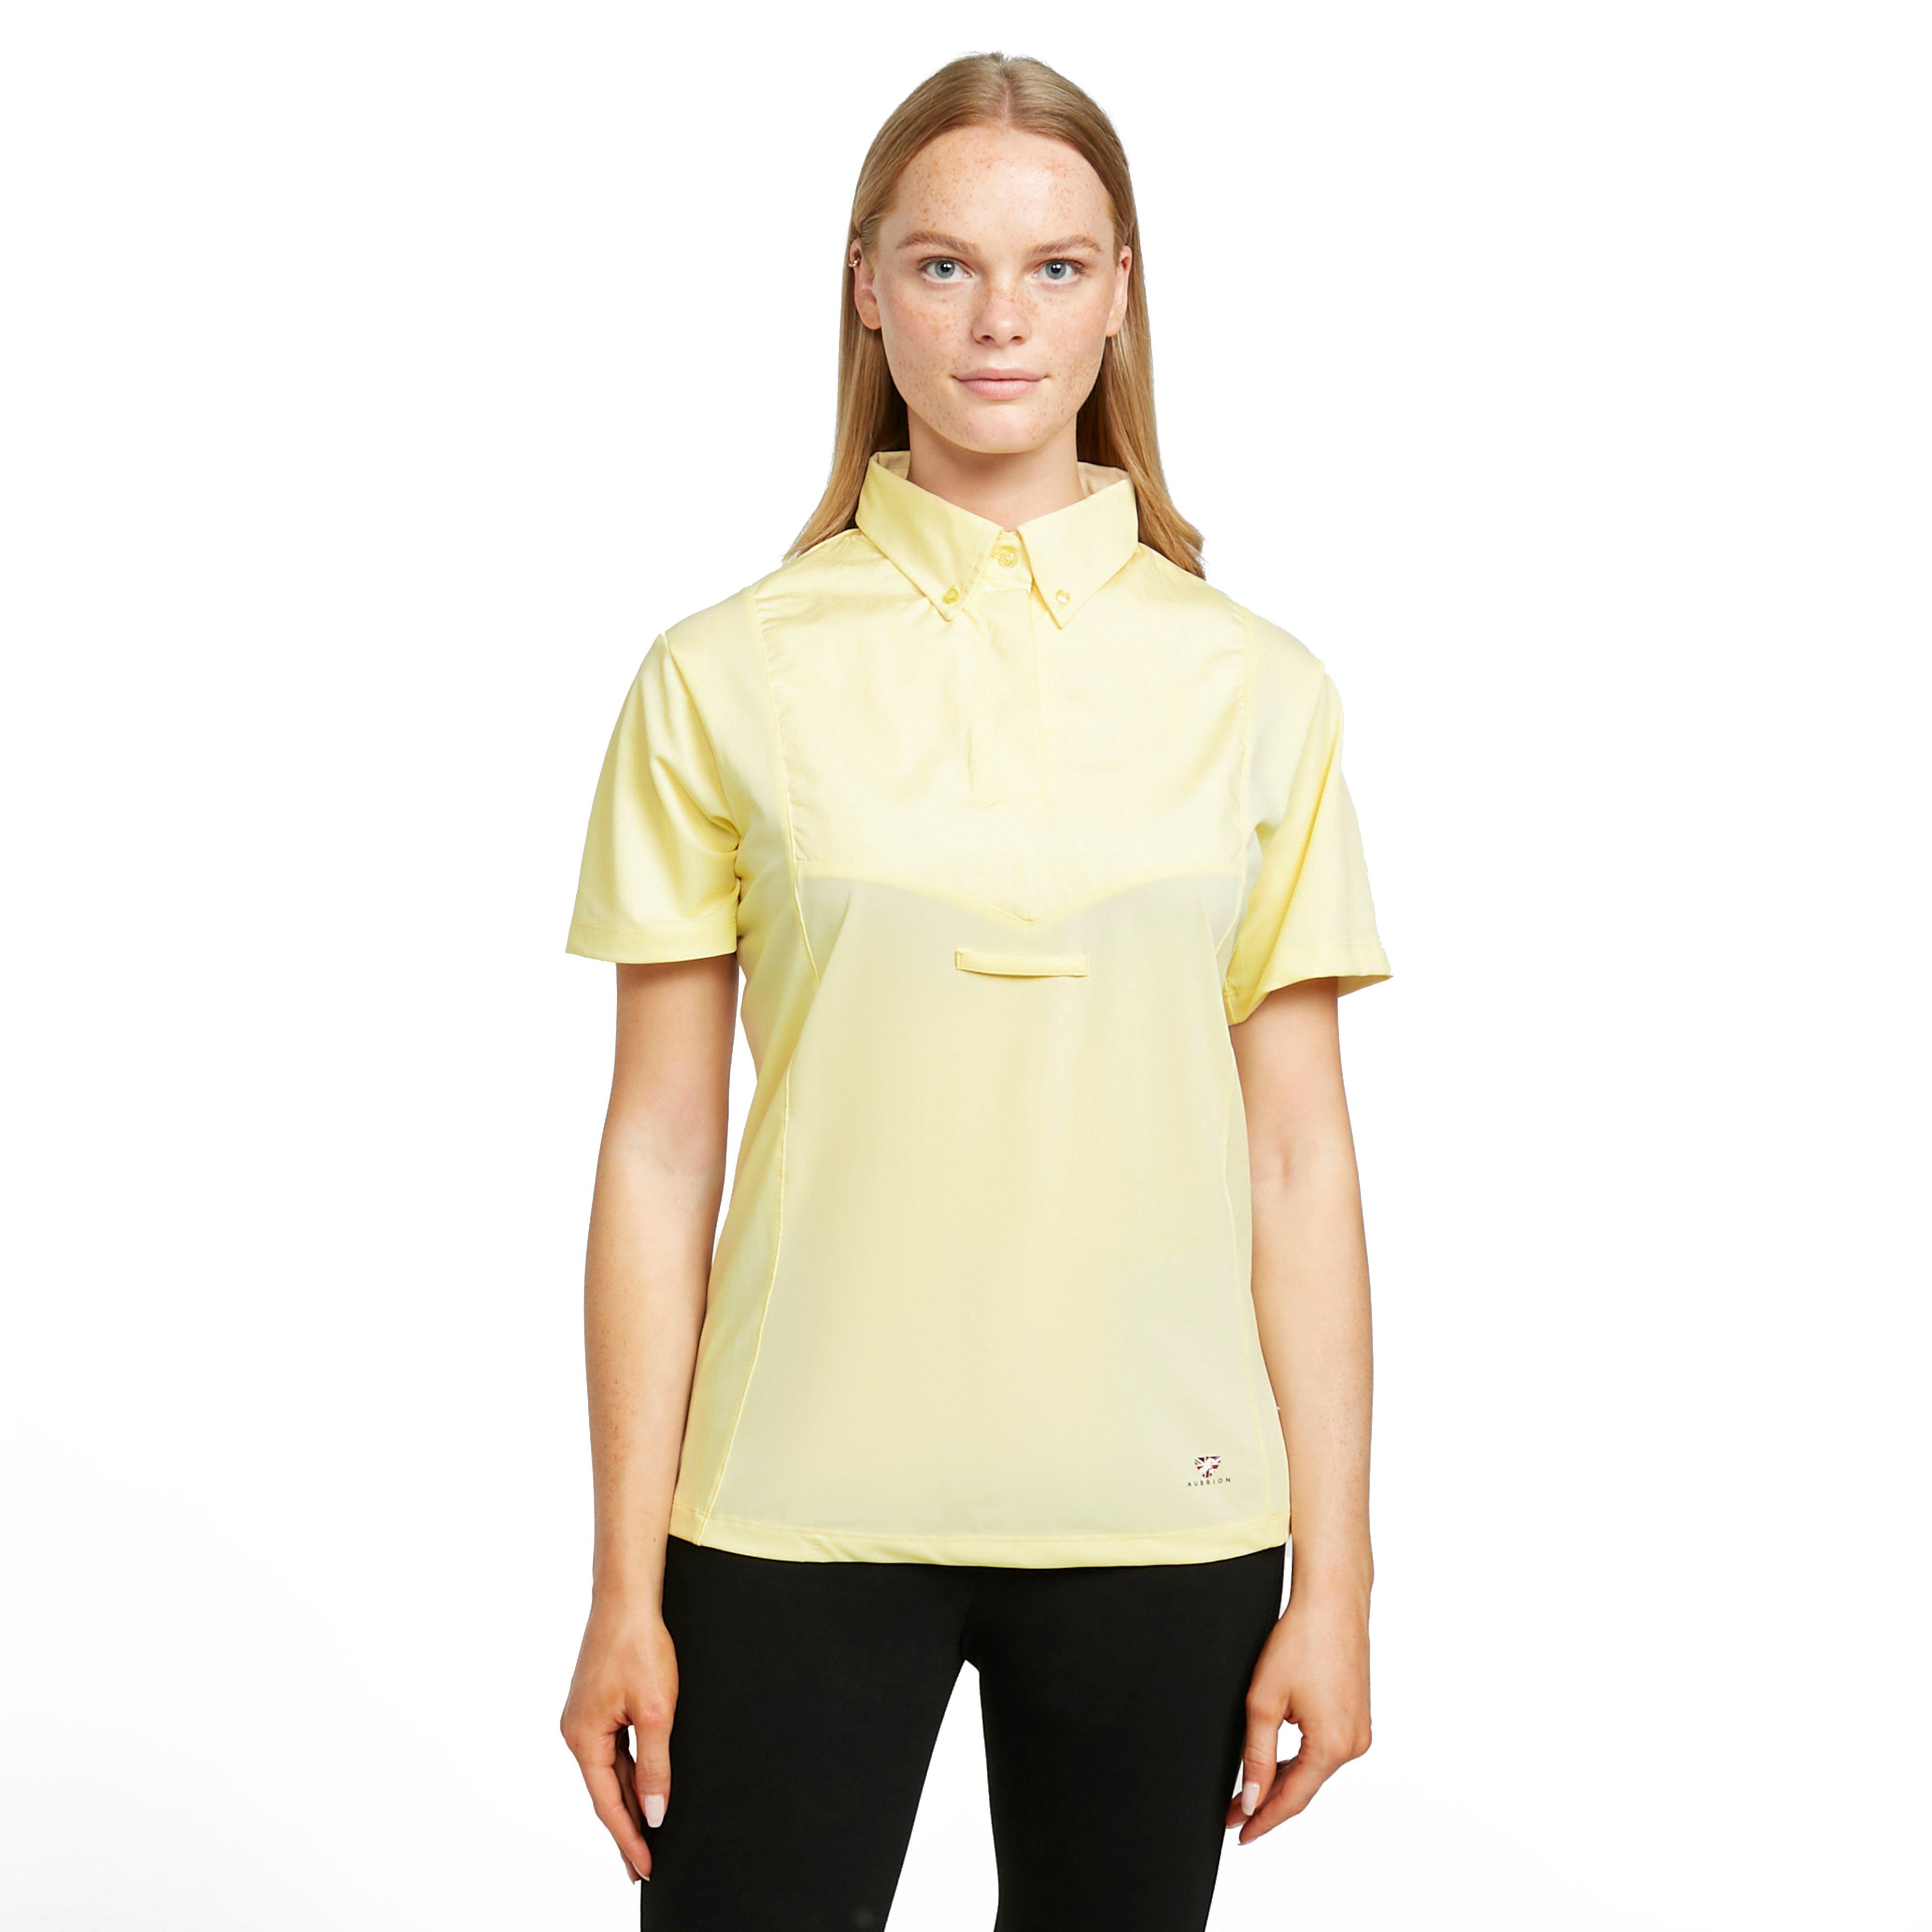 Womens Short Sleeve Tie Shirt Yellow